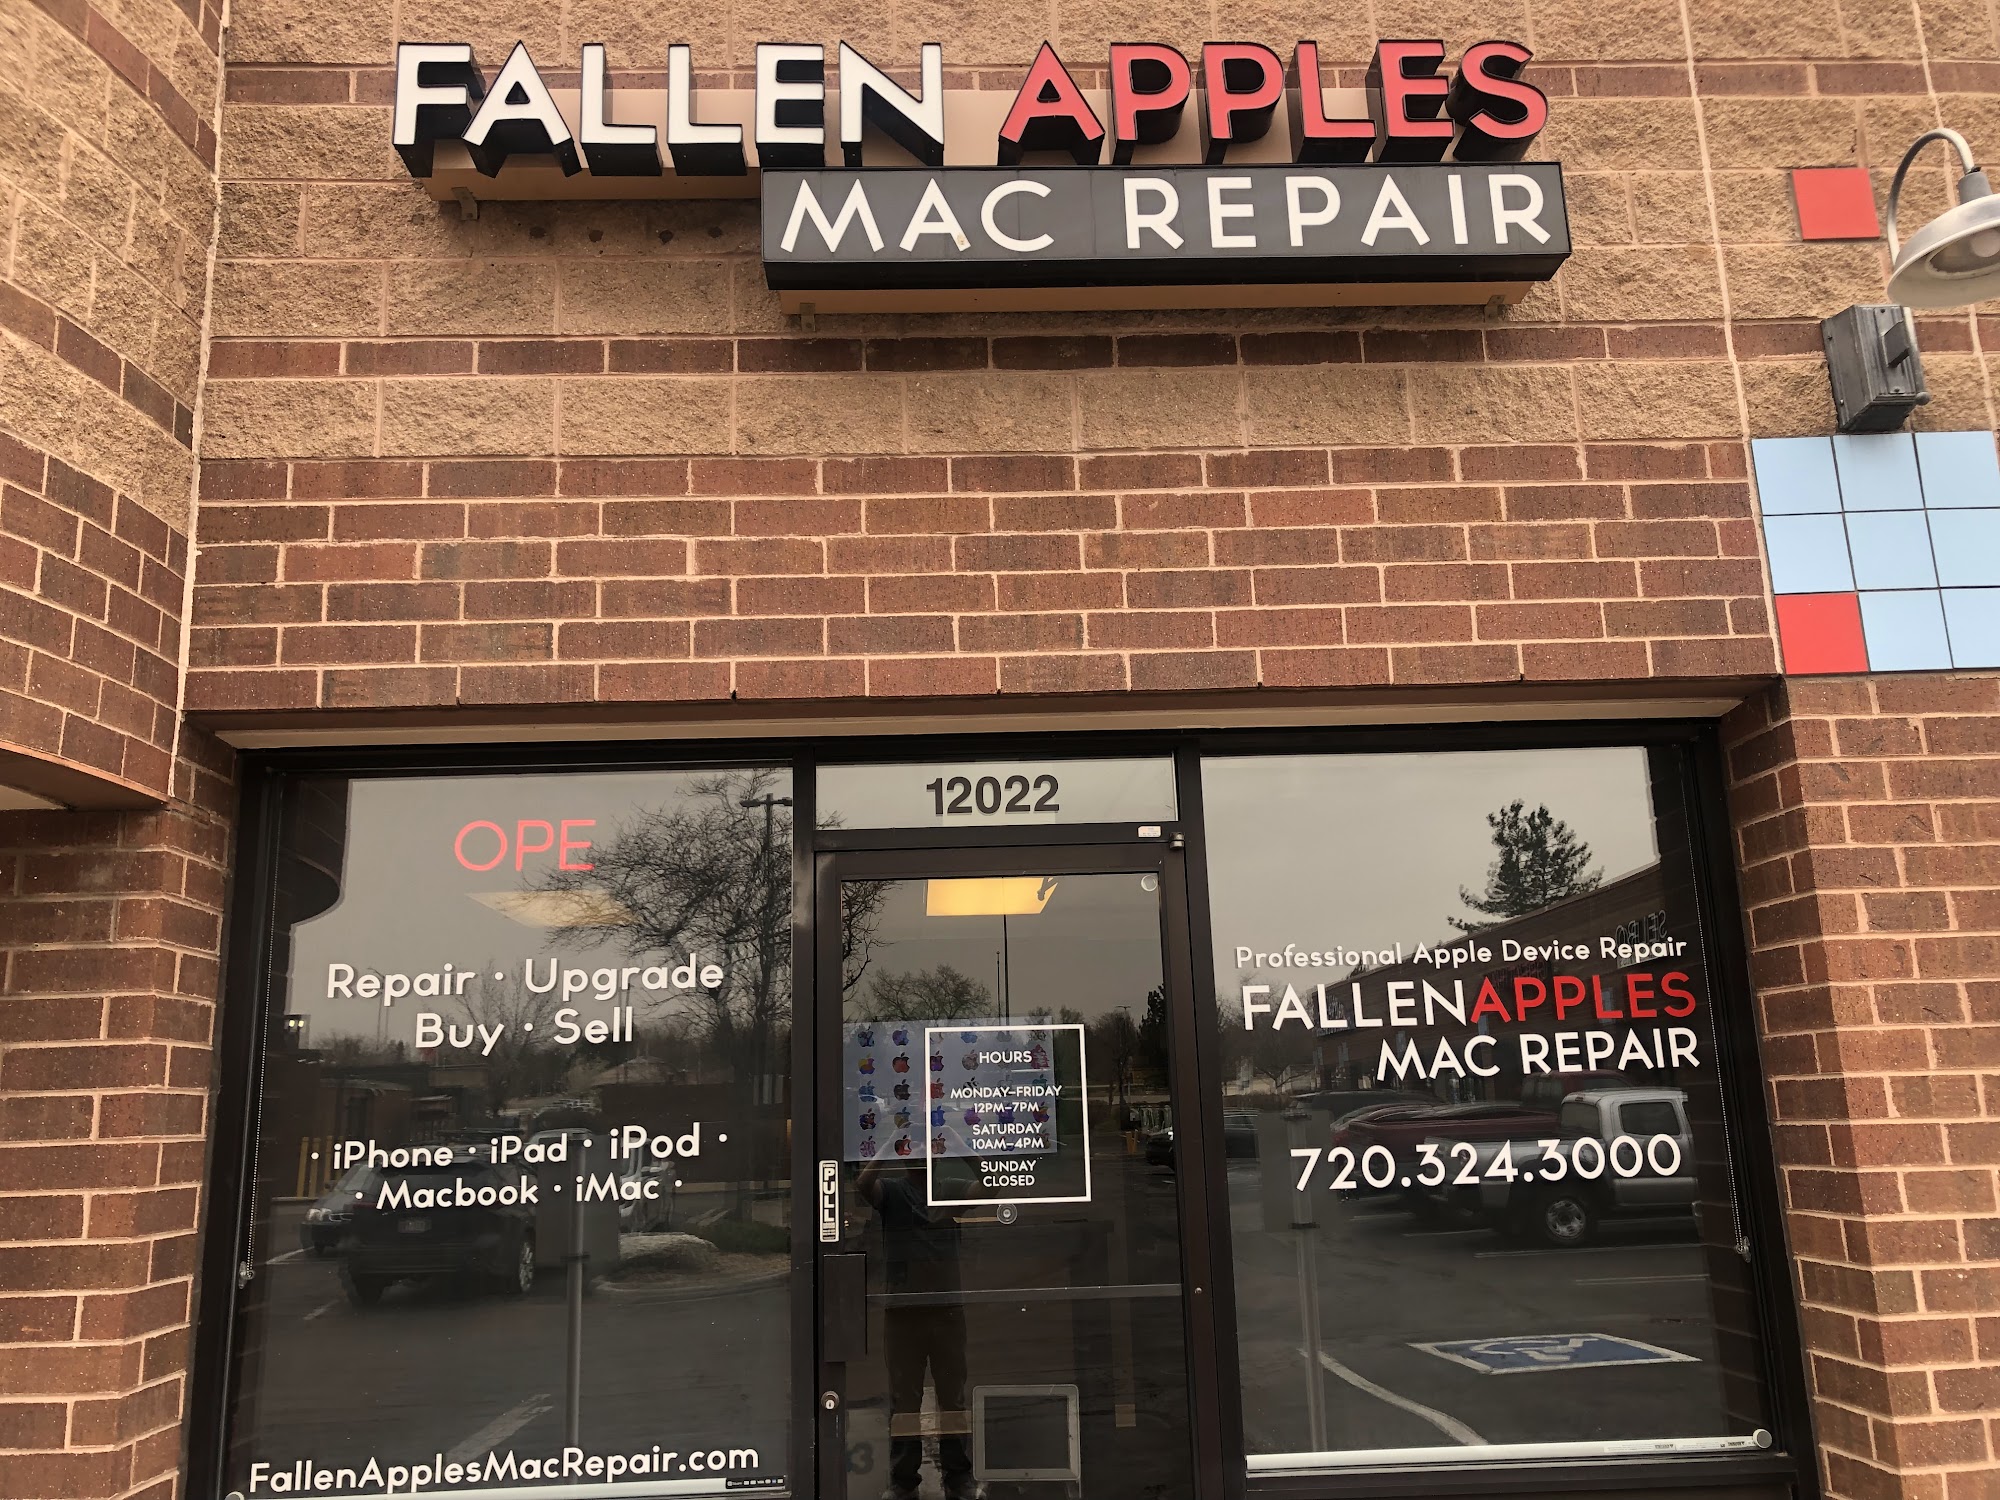 Fallen Apples Mac Repair